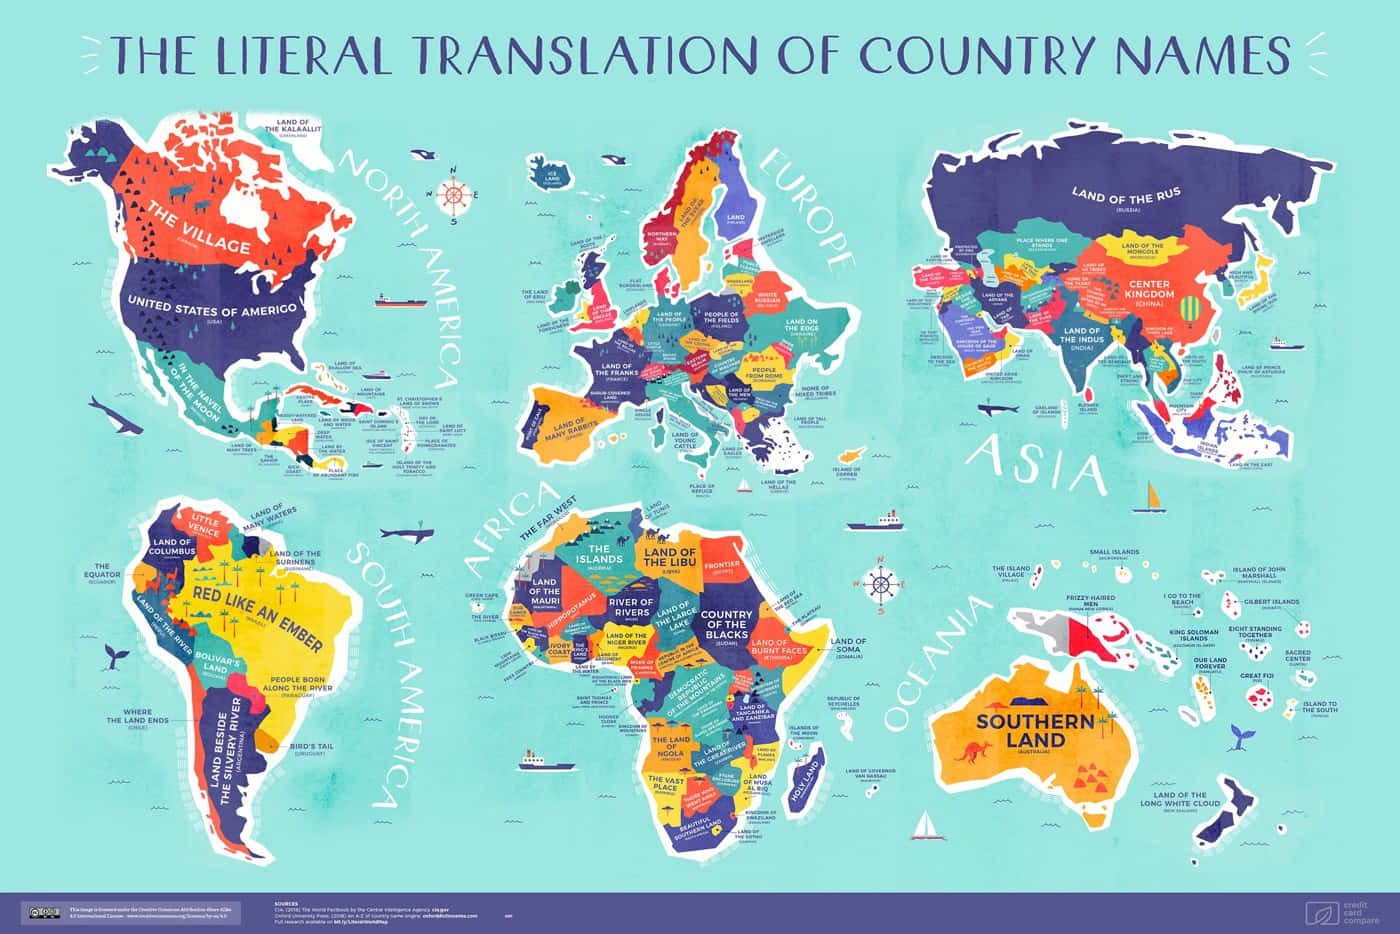 Imagensdo Mapa Mundial.